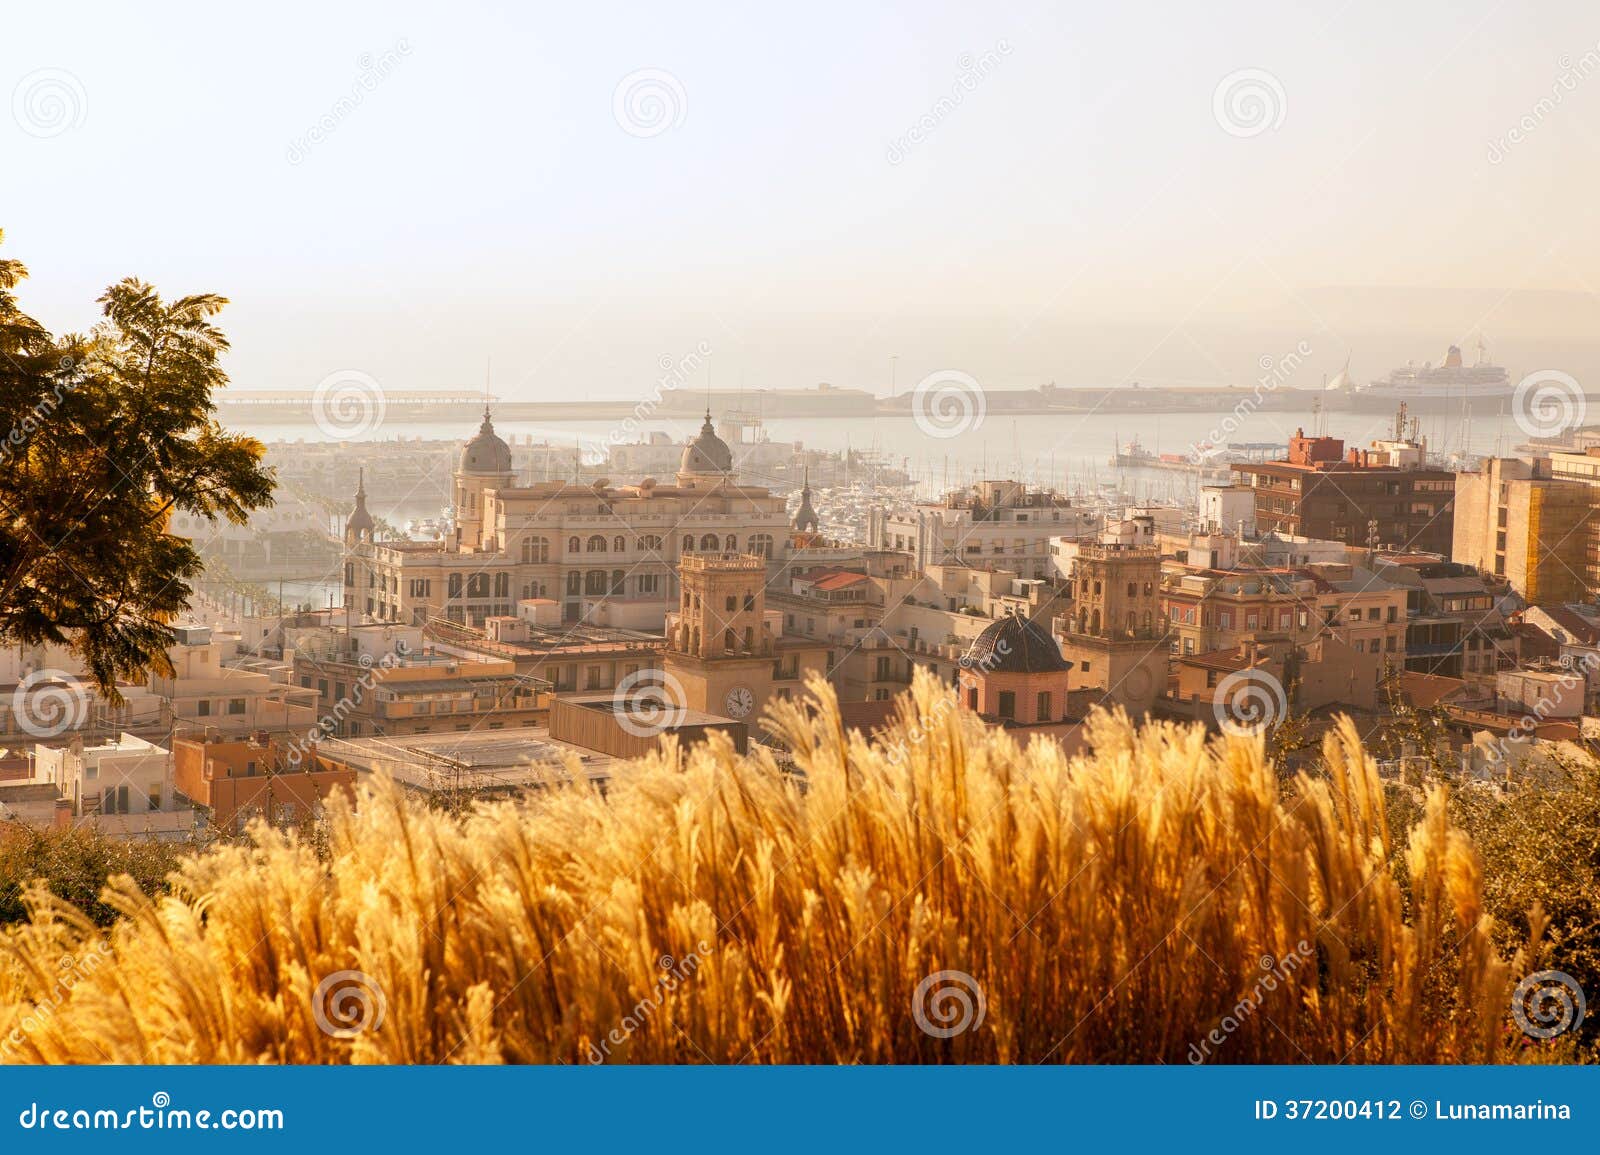 alicante cityscape skyline in mediterranean sea